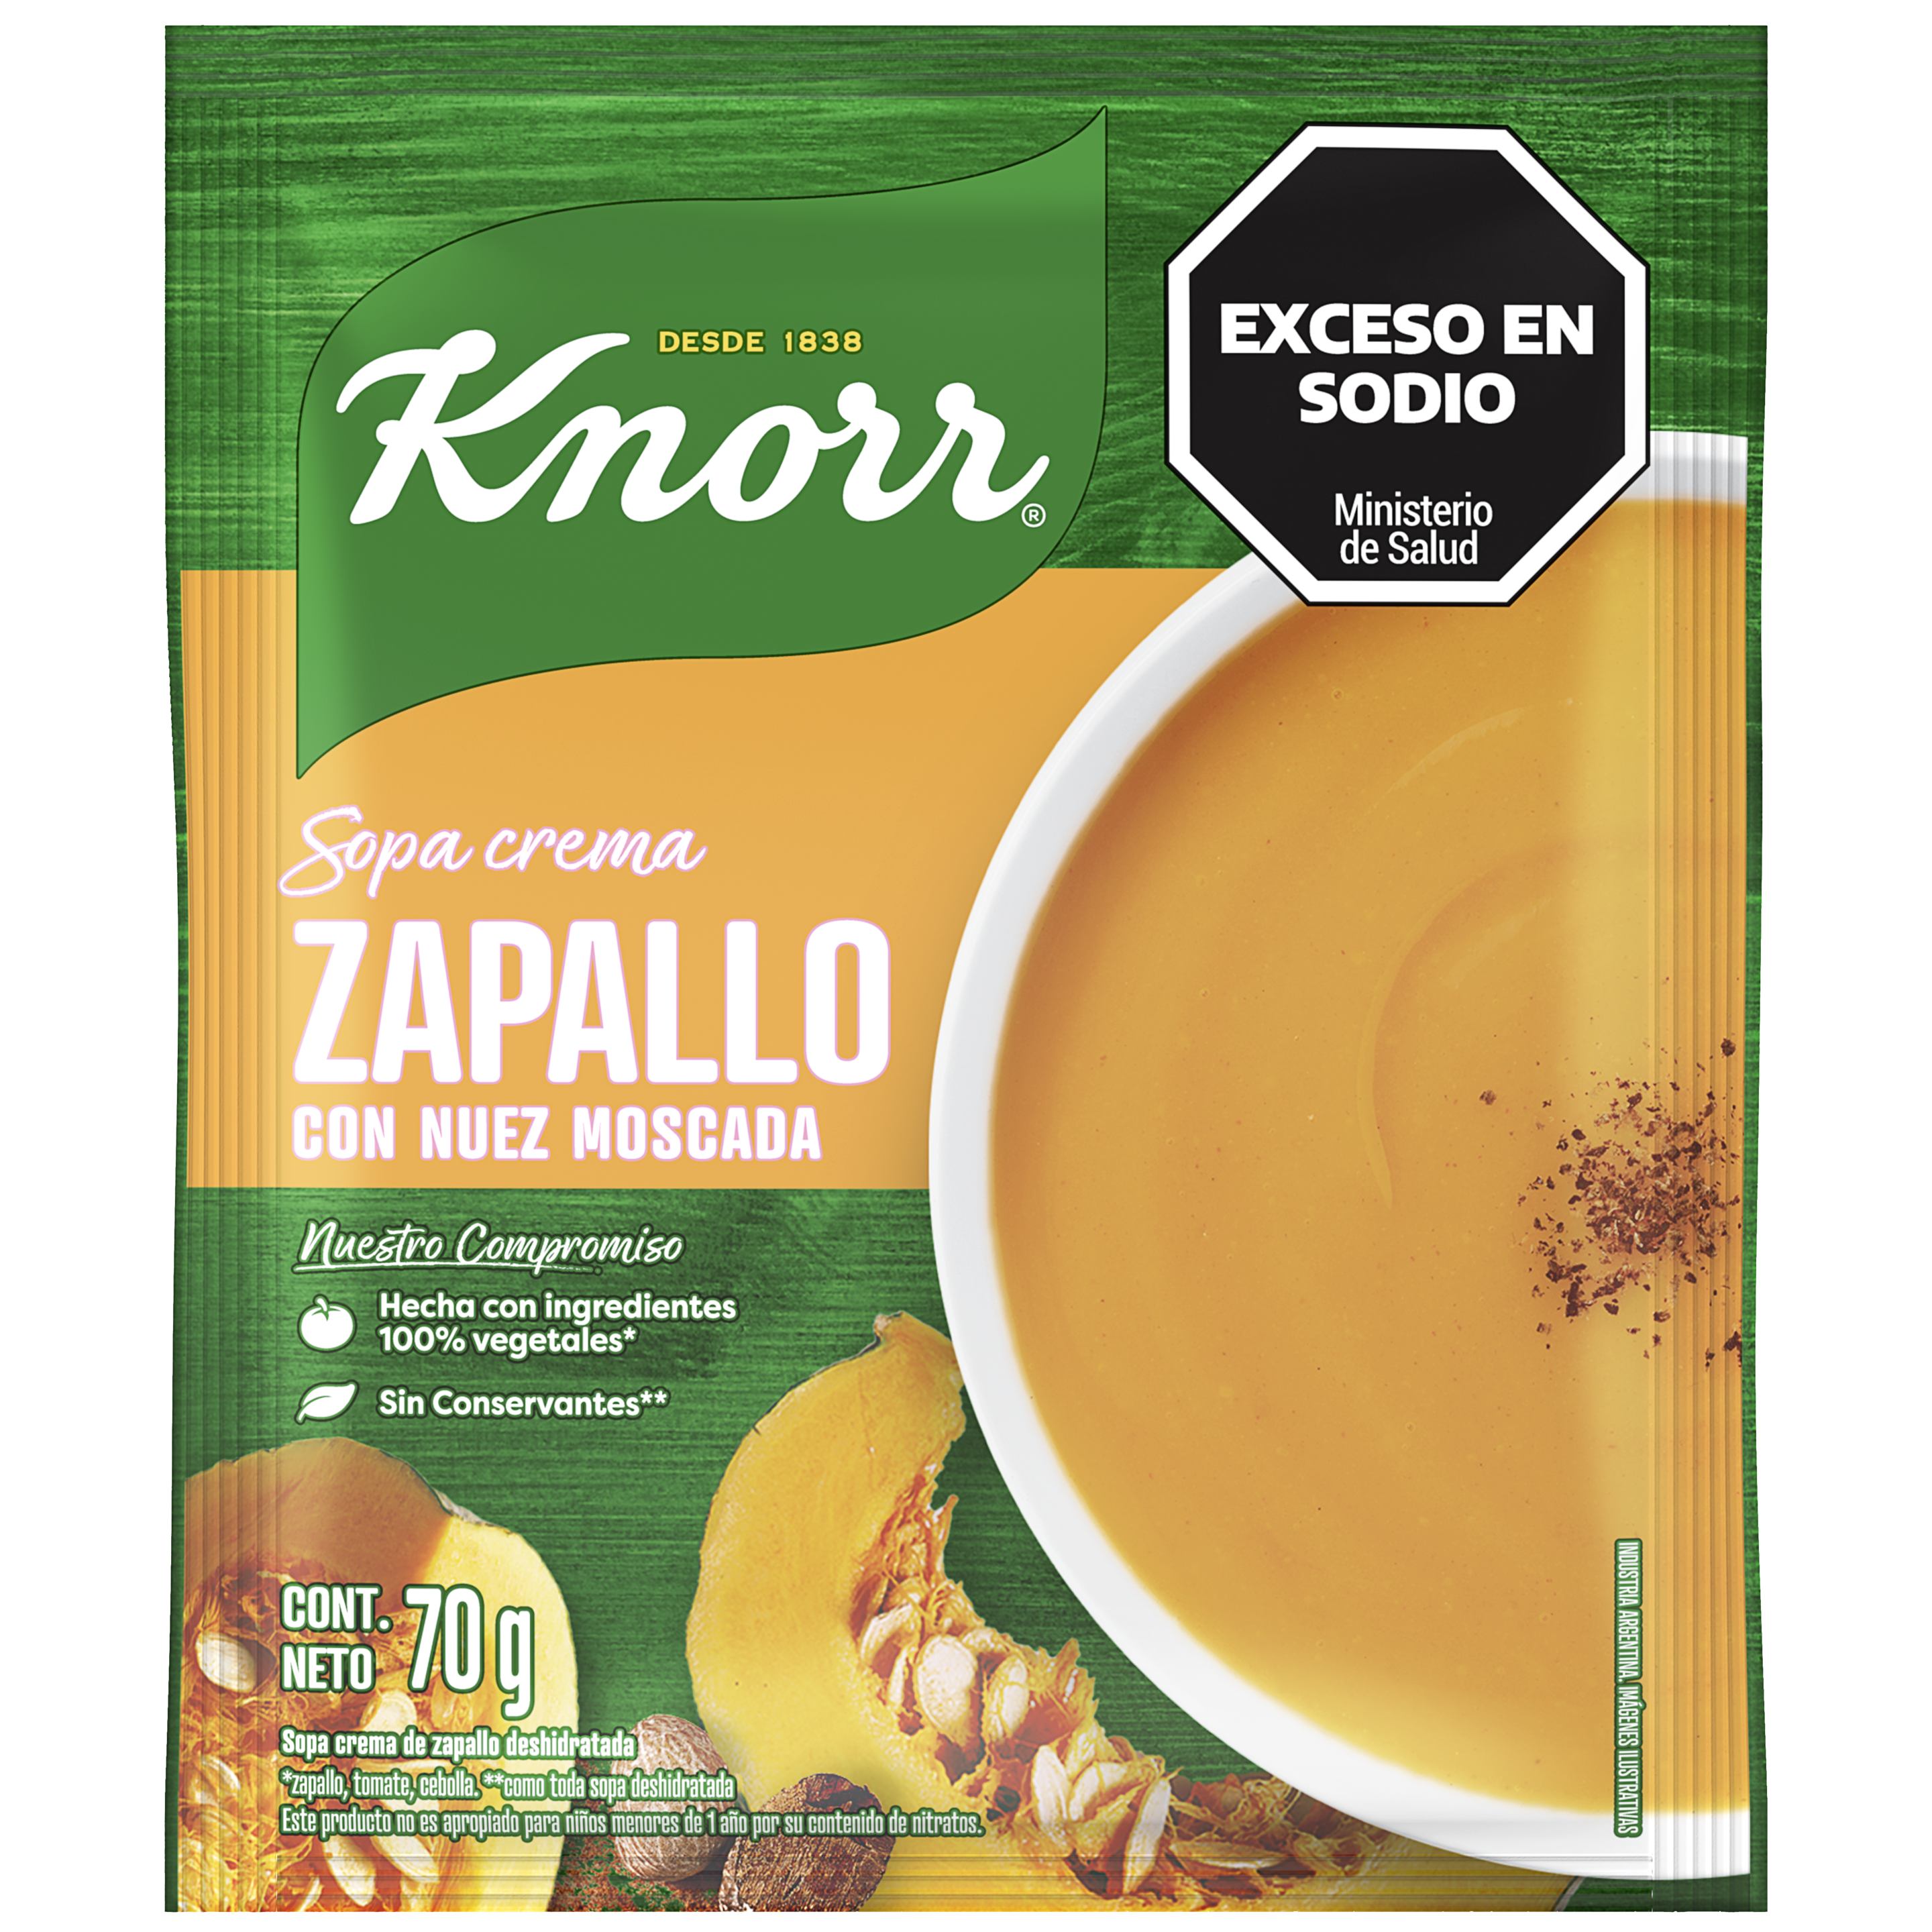 Imagen de envase Sopa Crema de Zapallo Knorr